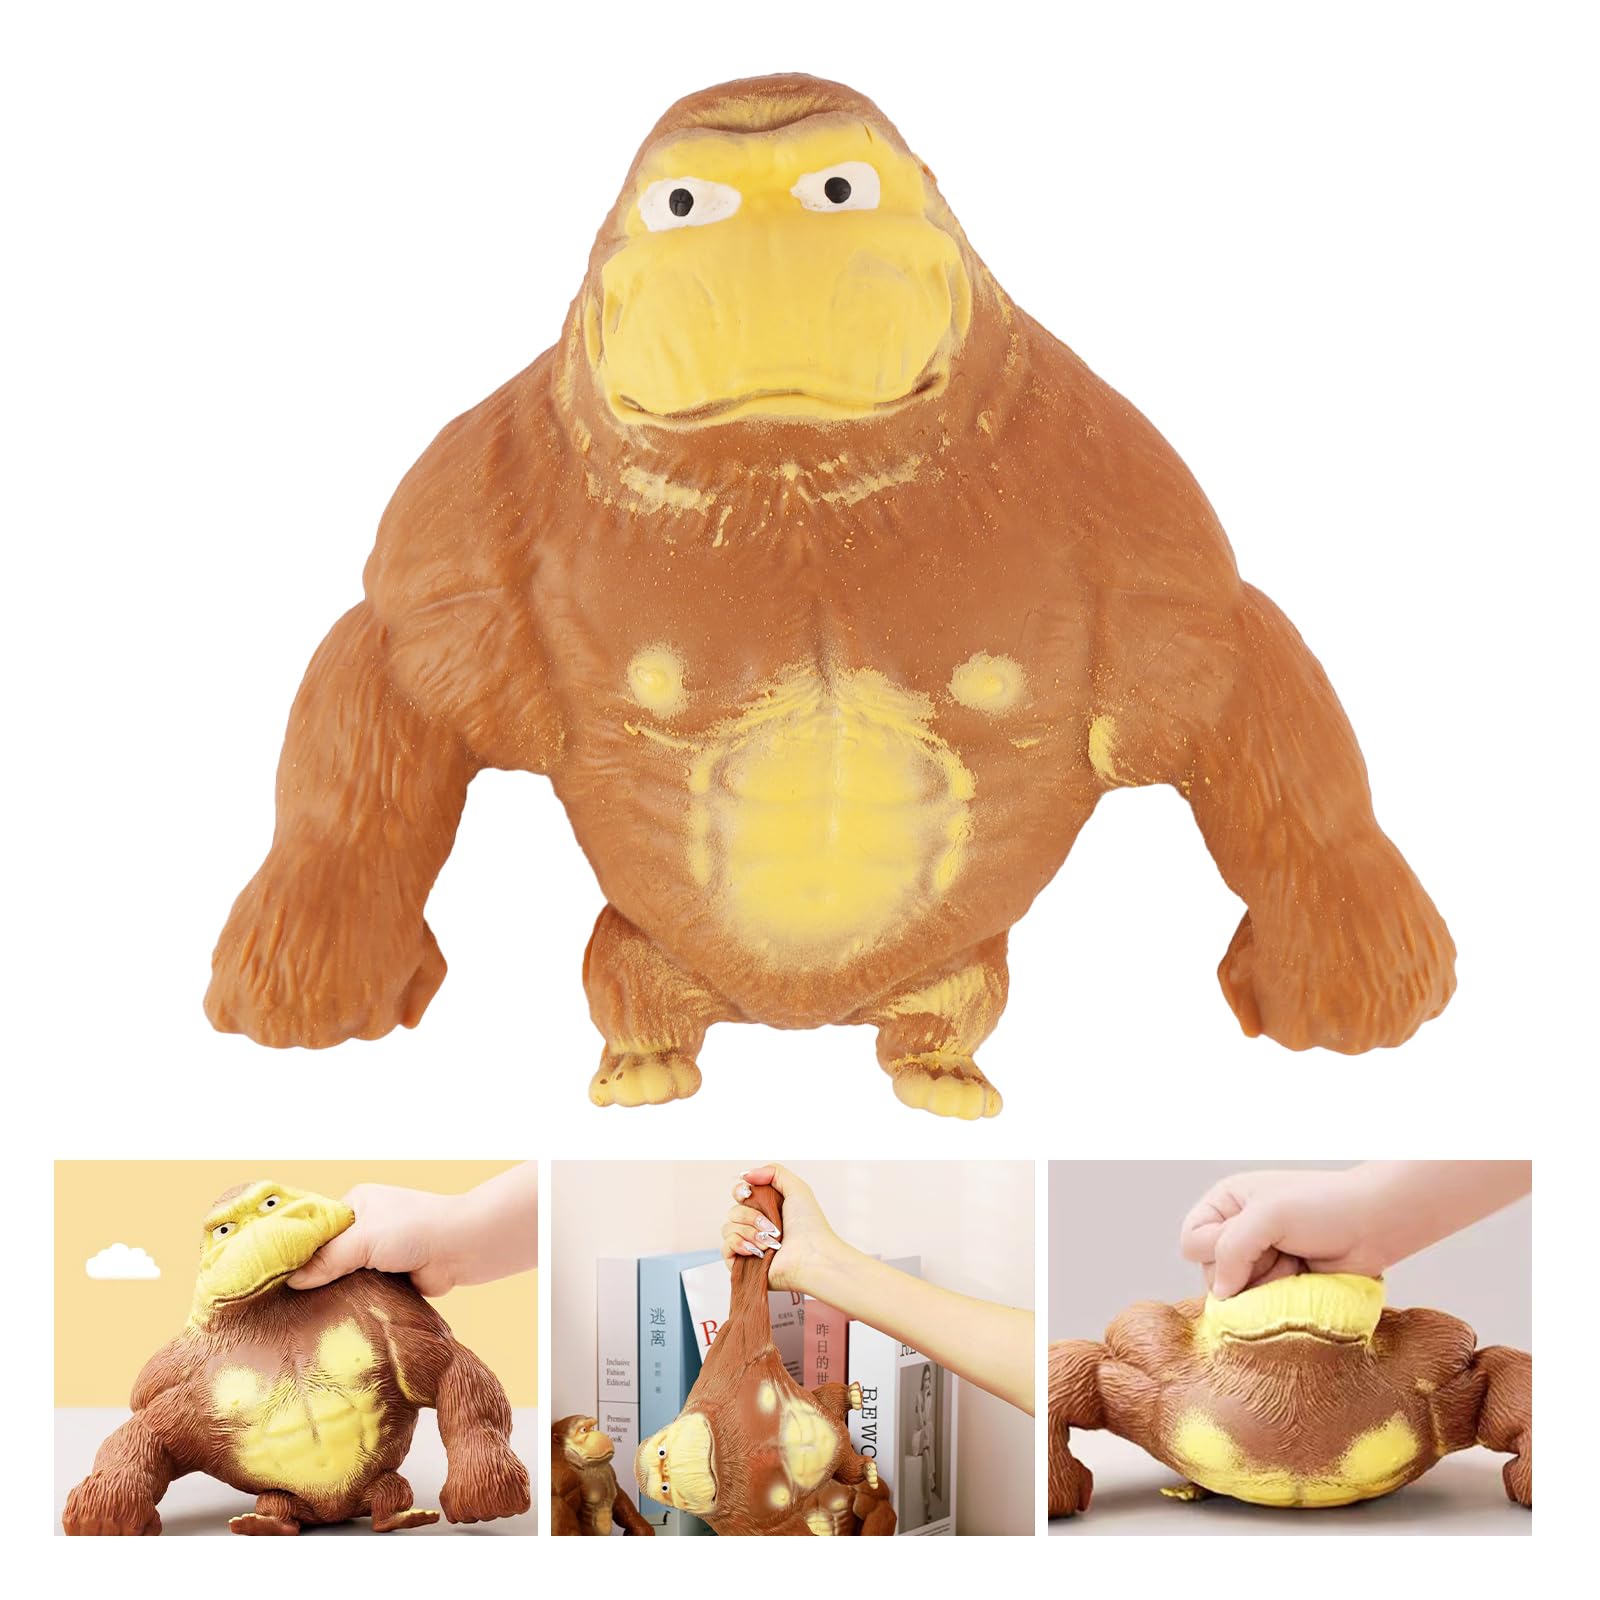 XL Gorilla 600 gram !! Stress Relief Toy, Stretch Latex Monkey Toy